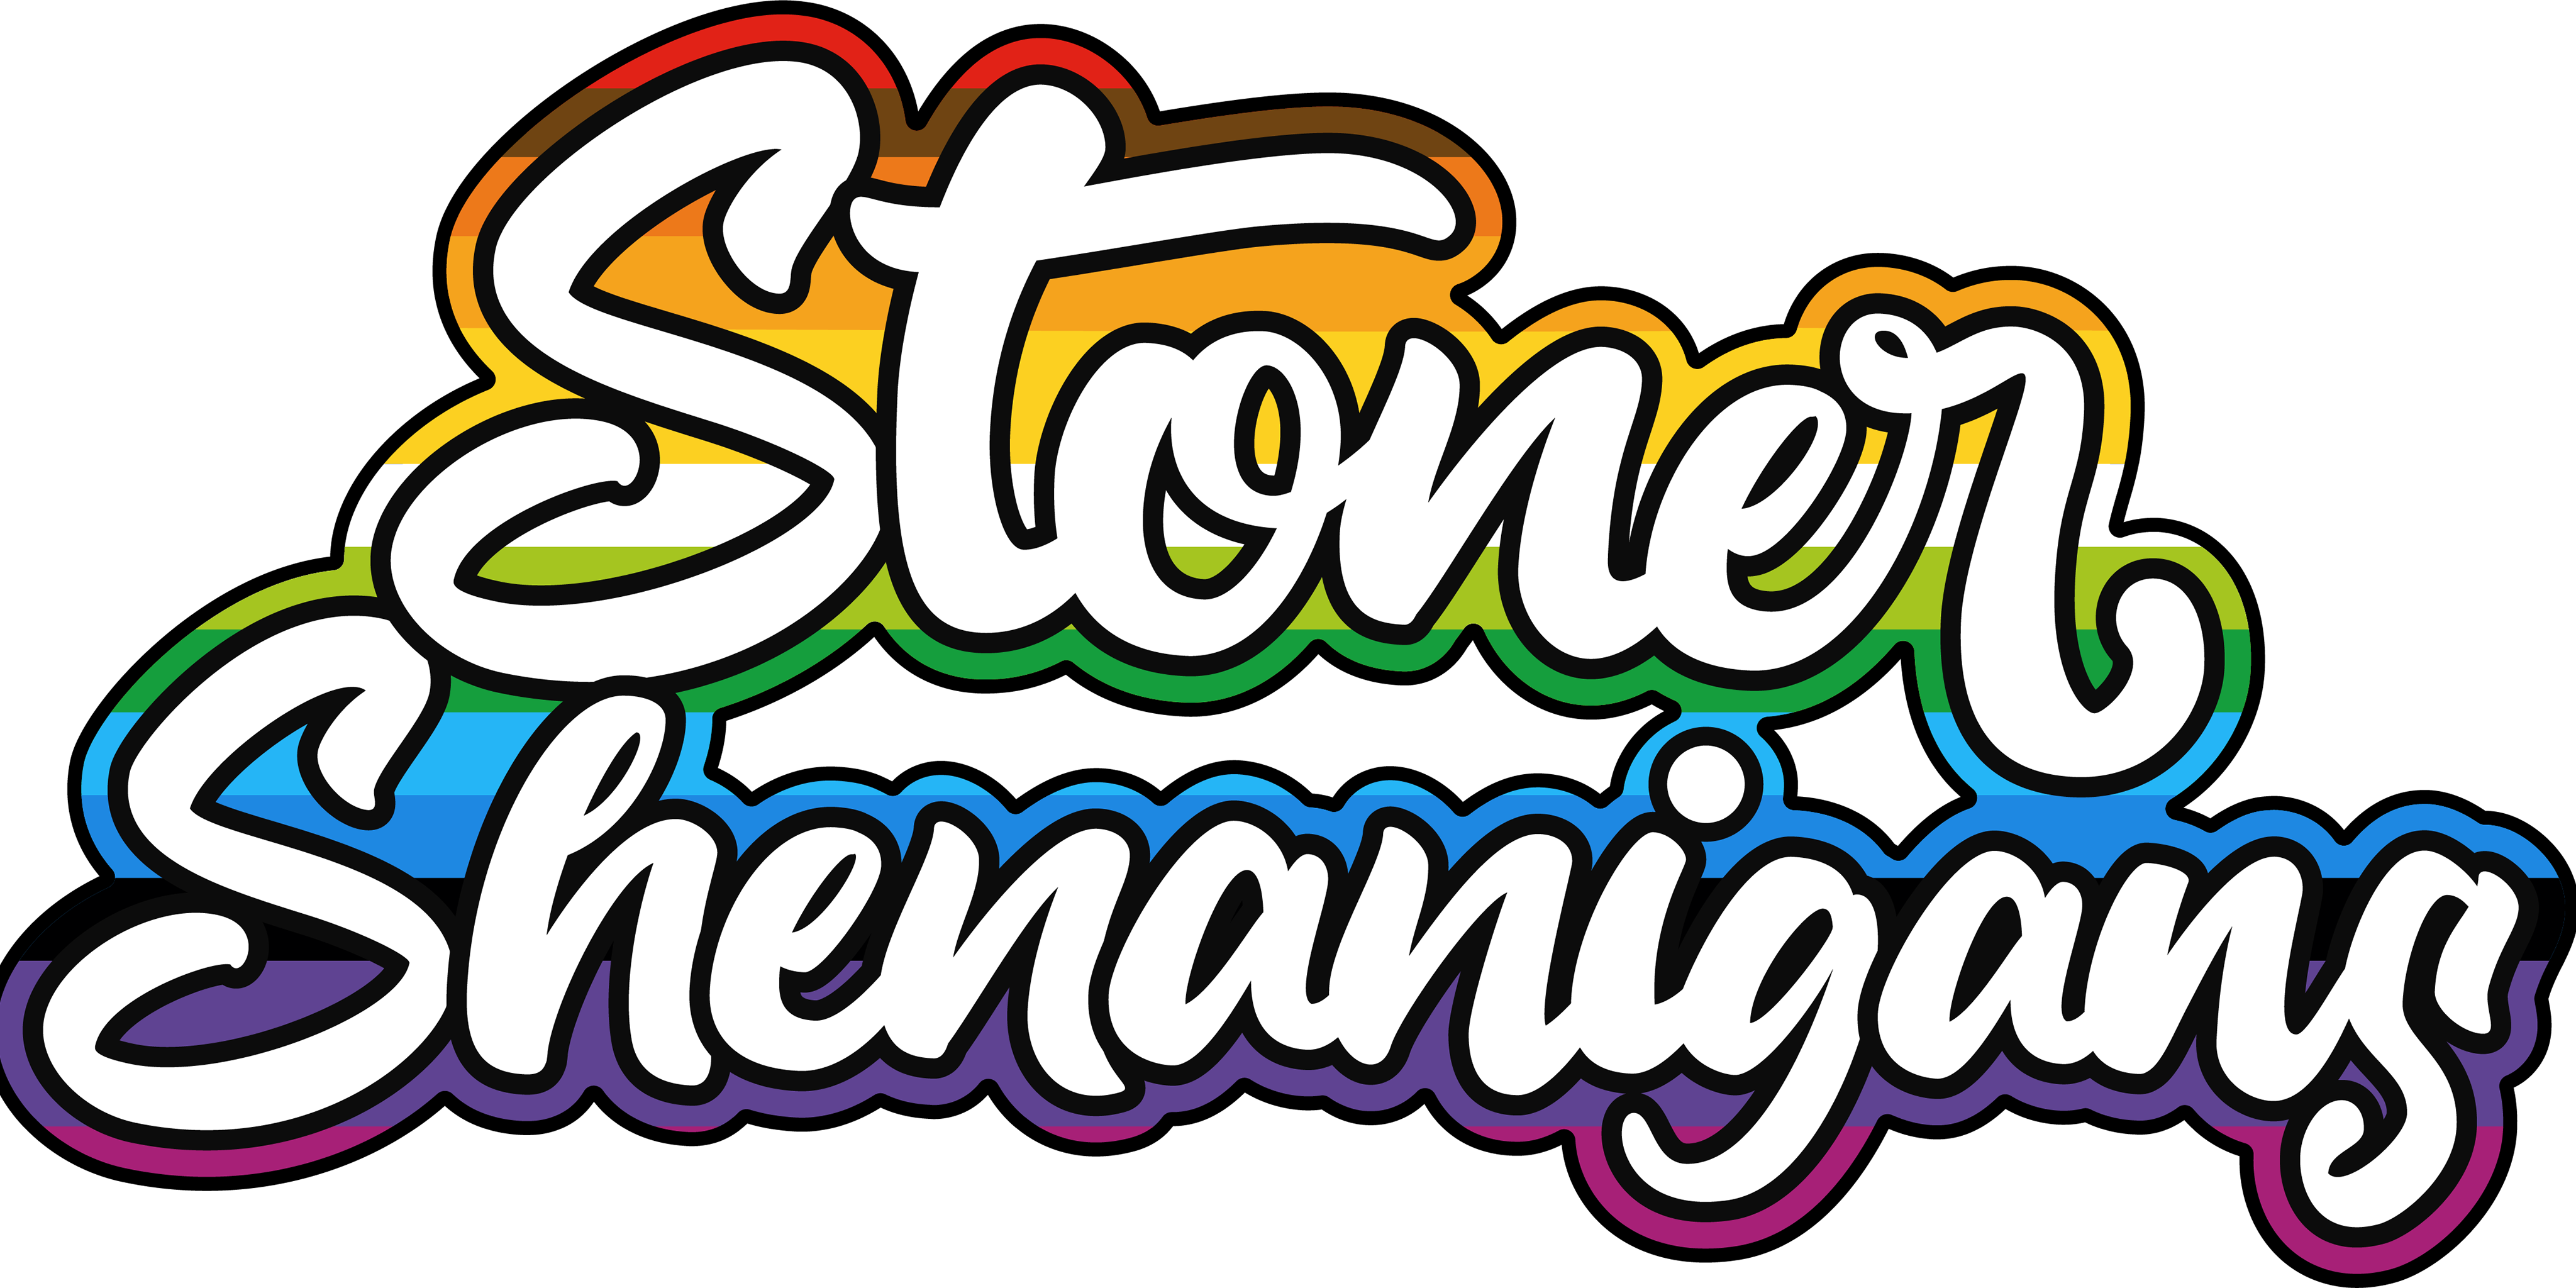 Stoner Shenanigans